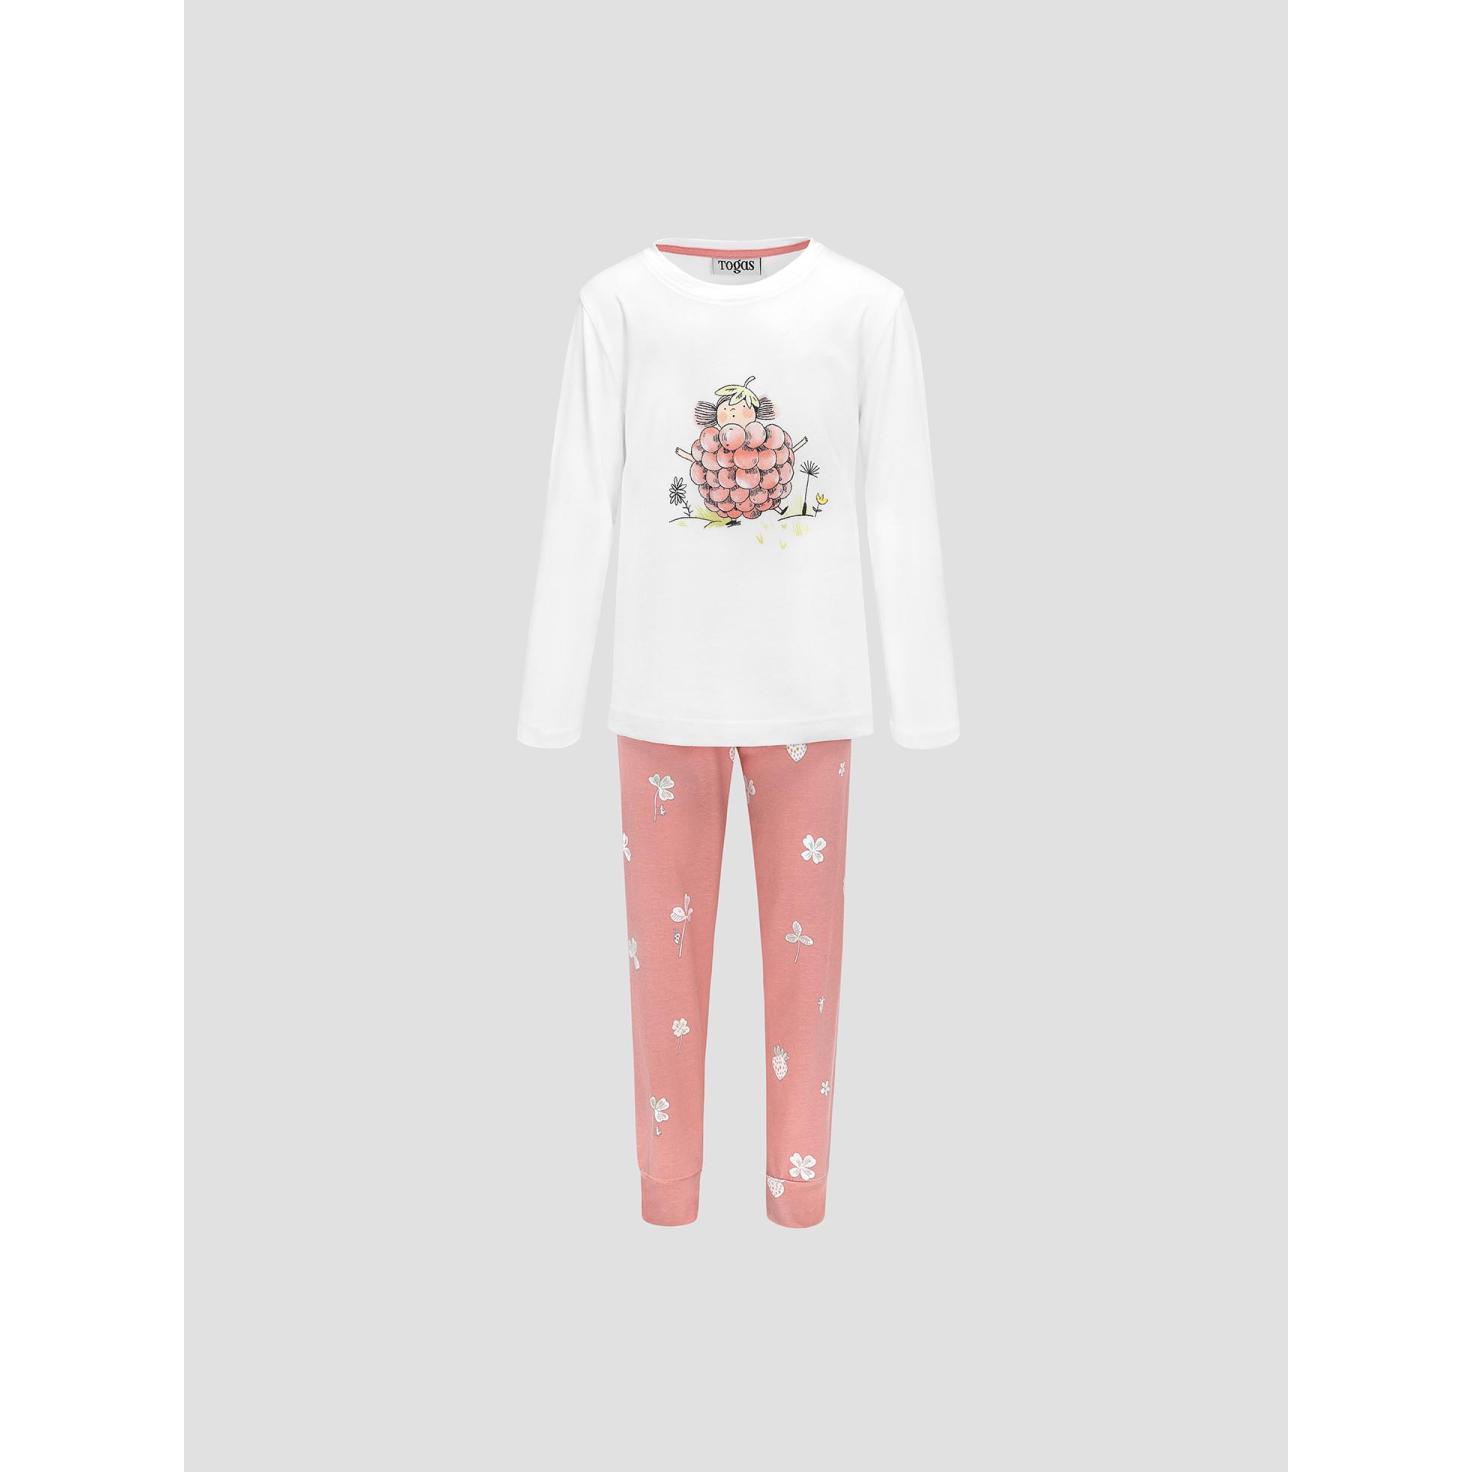 Пижама для девочек Kids by togas Стробби бело-розовый 116-122 см пижама togas эсме бело сиреневая женская